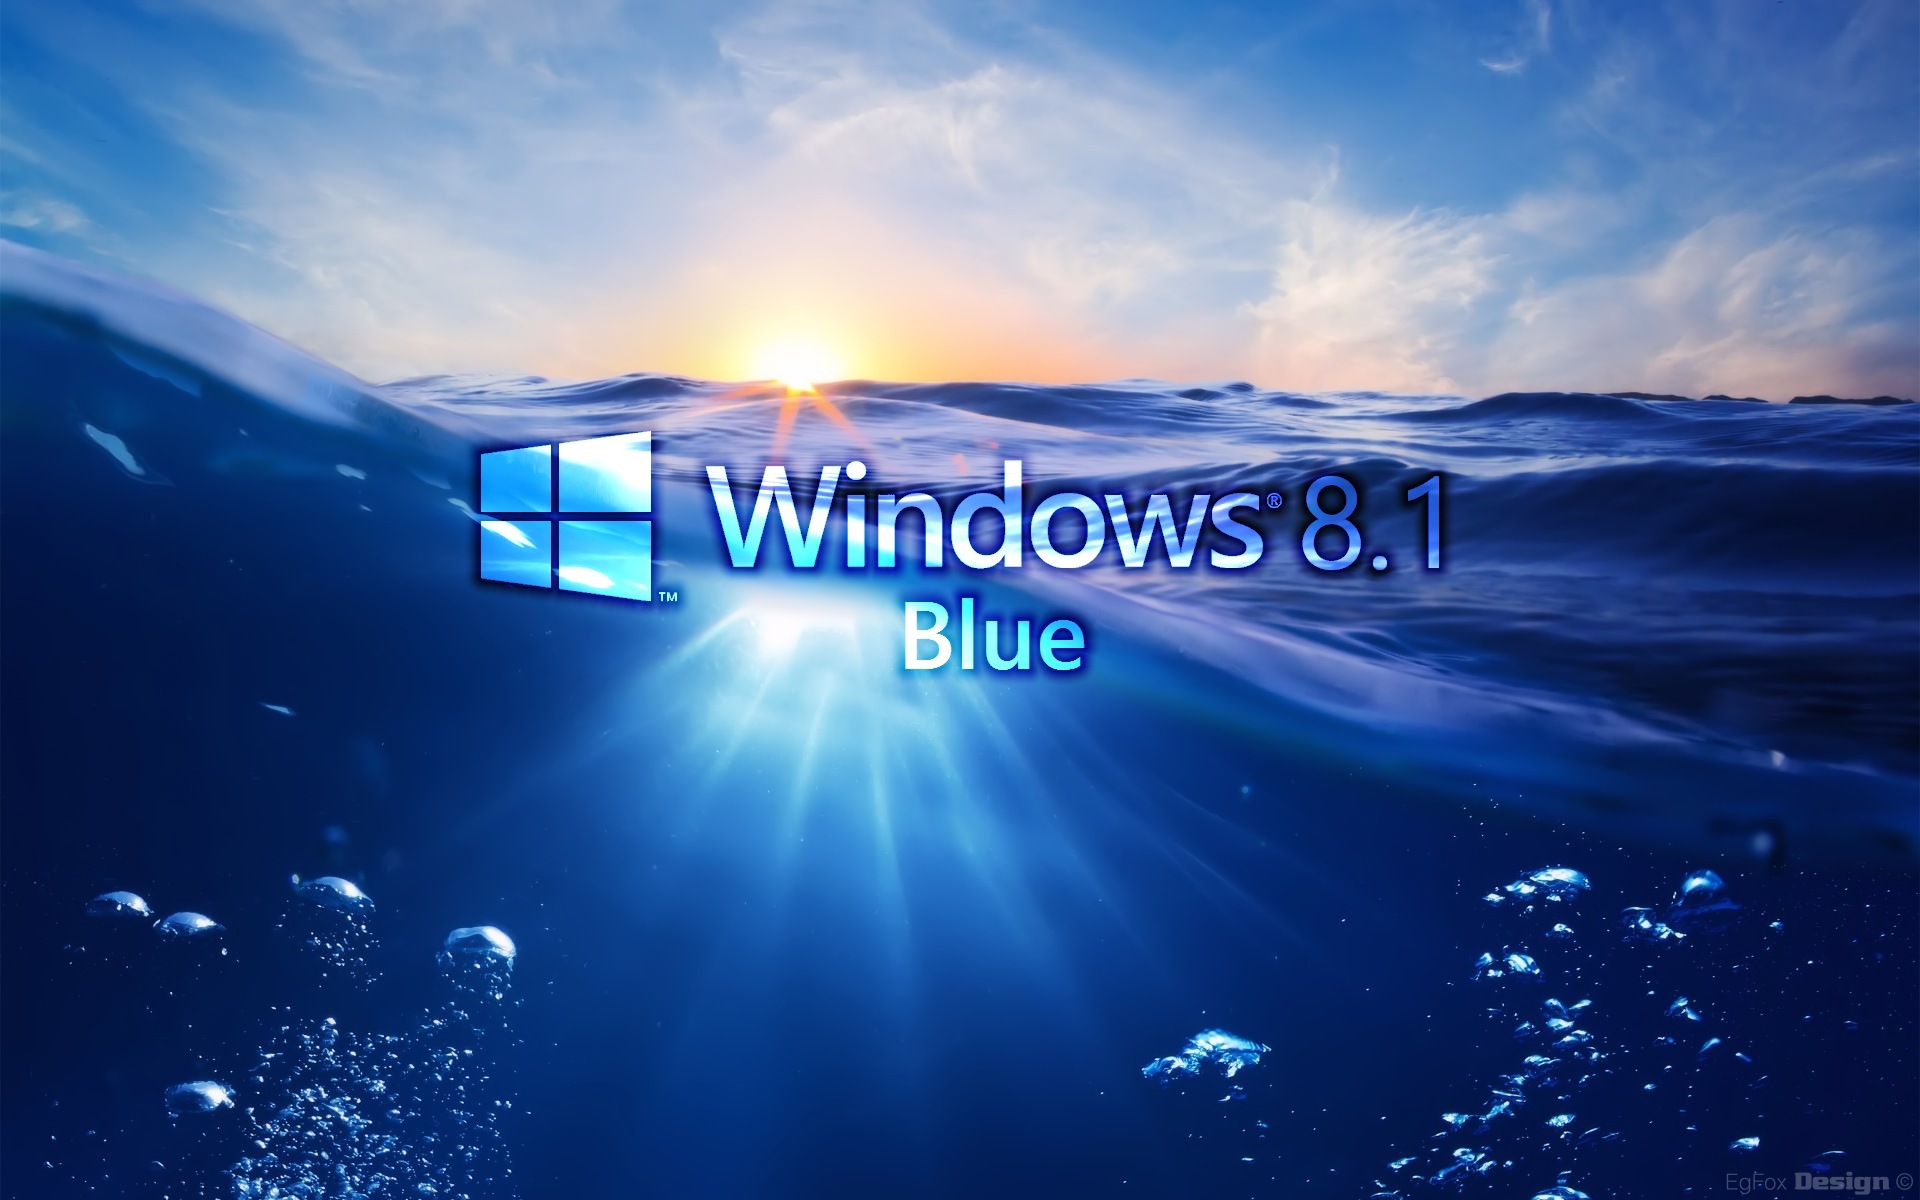 Windows 8.1 High Quality Wallpapers : Brands Wallpaper - Timbena.com